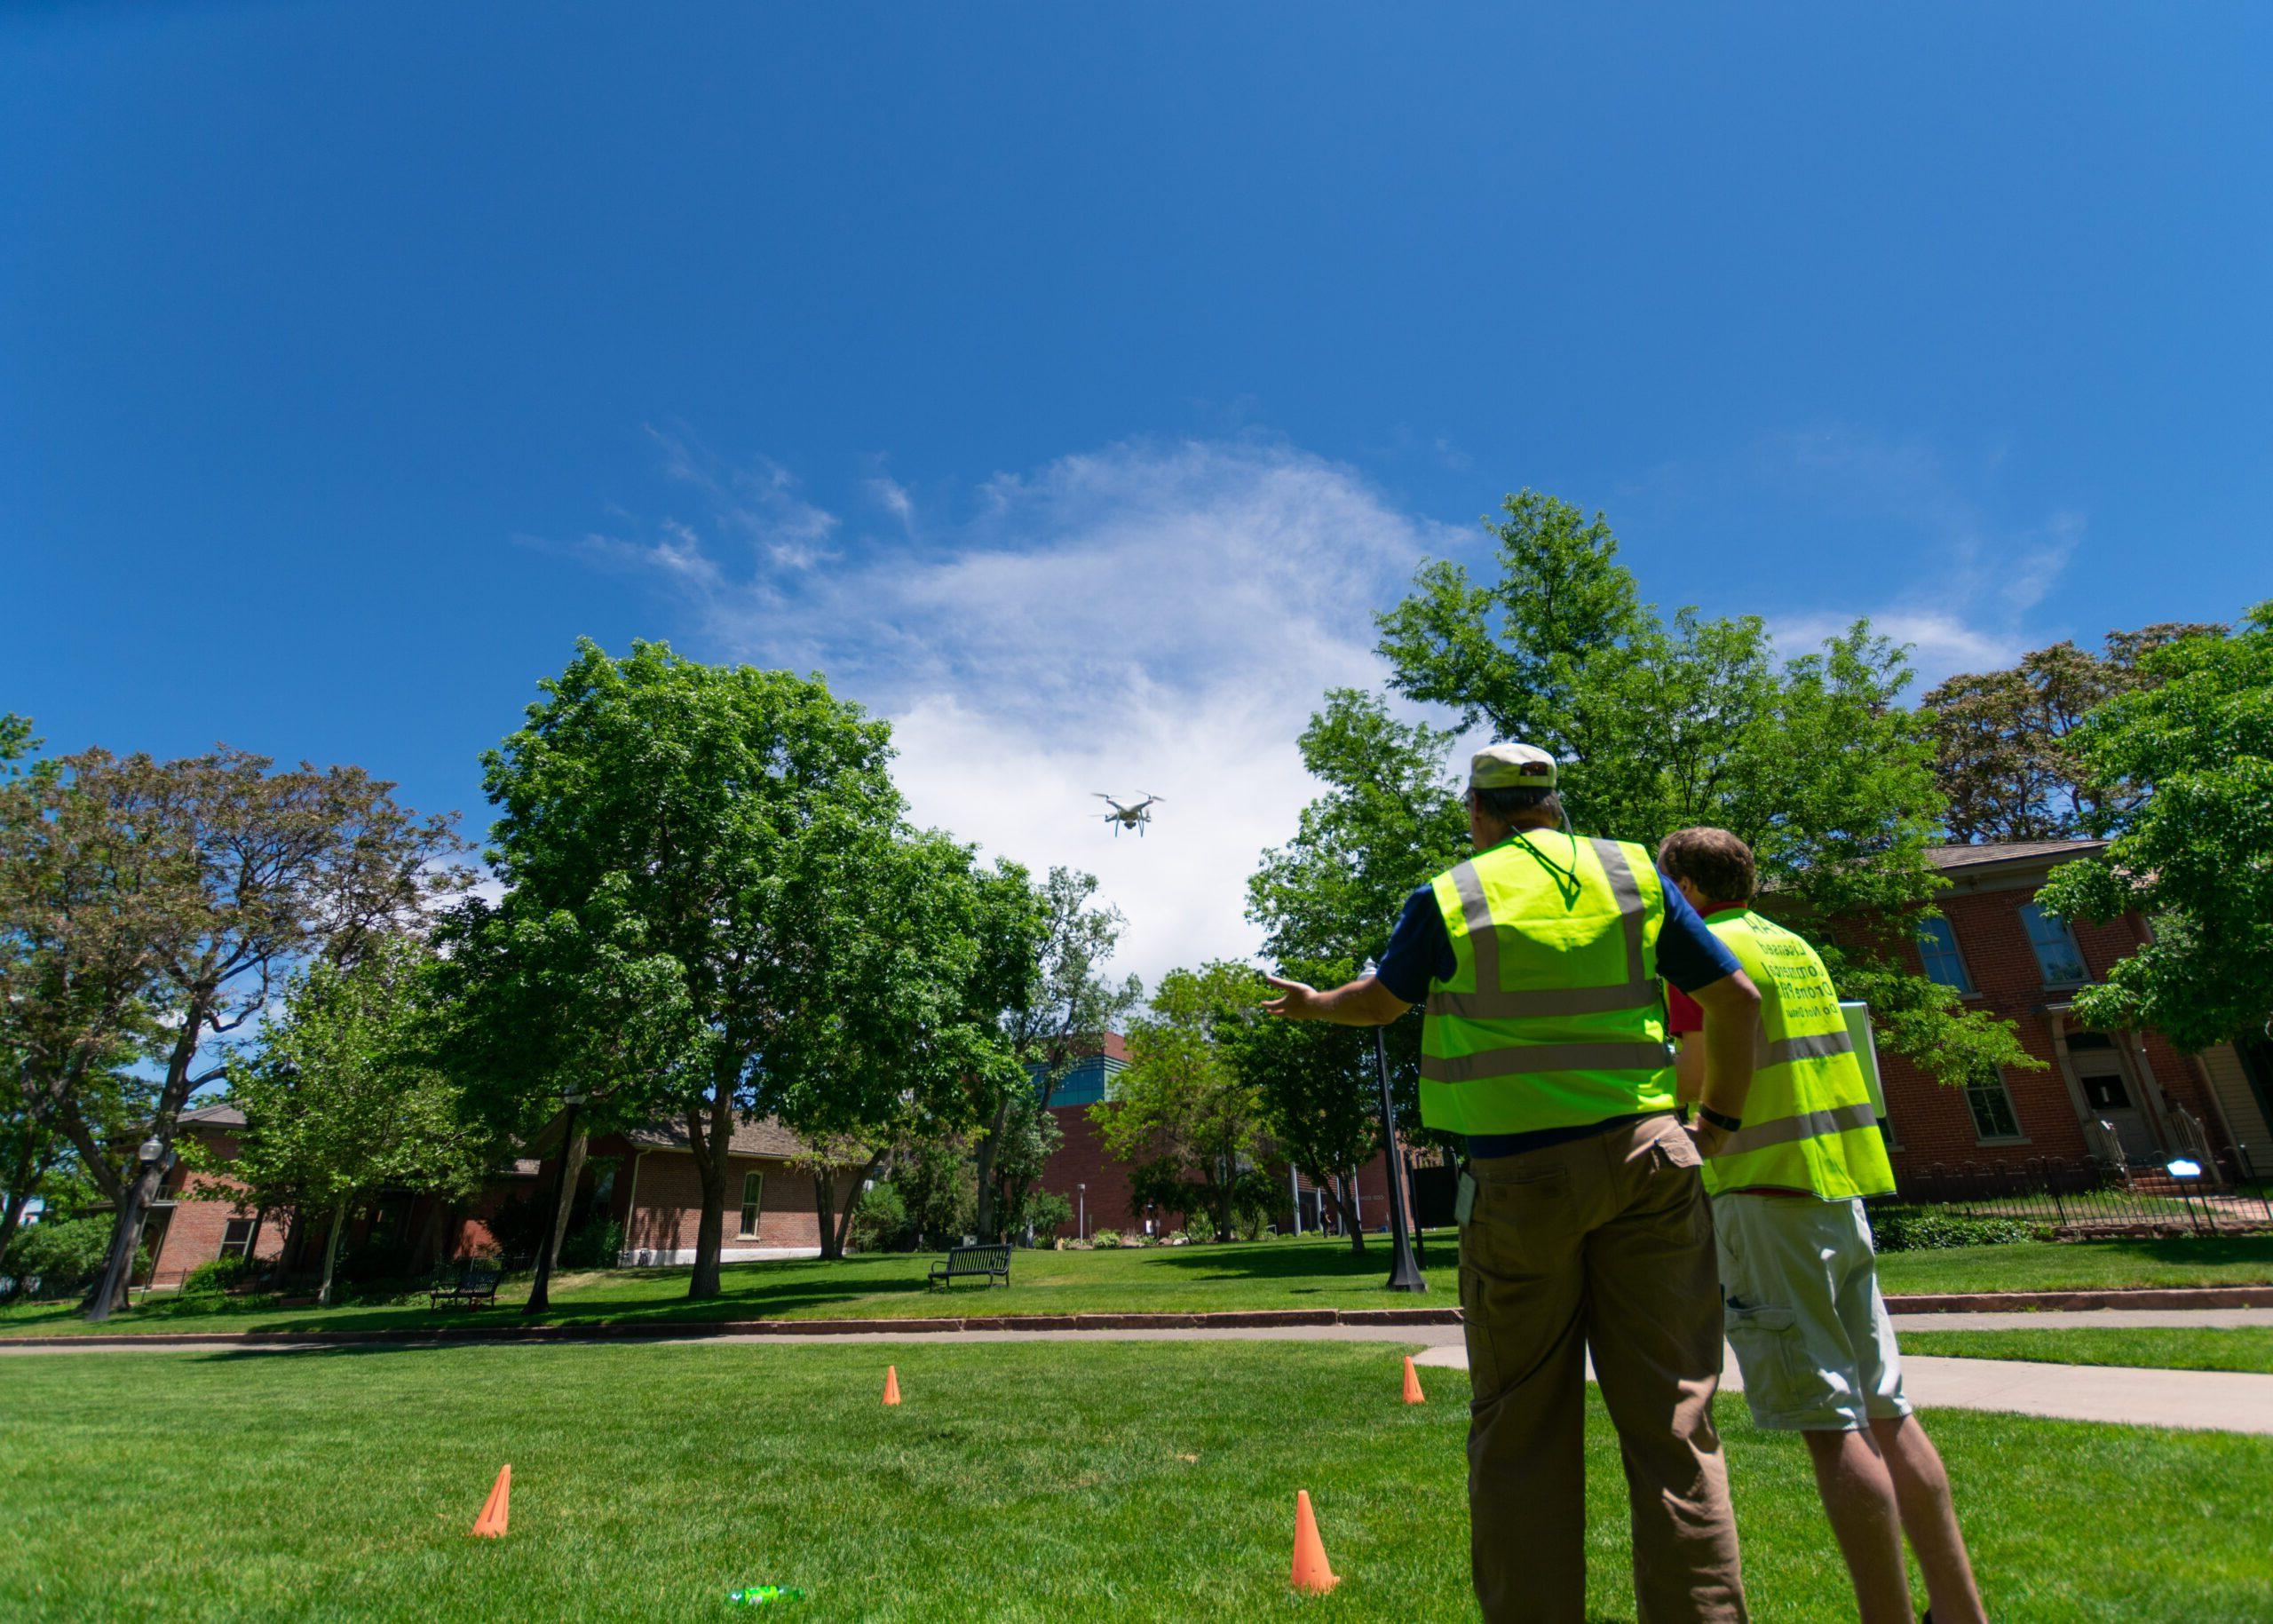 乔什·诺埃尔, 项目协调人, 和亚历克斯·杜桑, 航空技师, 用无人机测绘第九街公园吗.